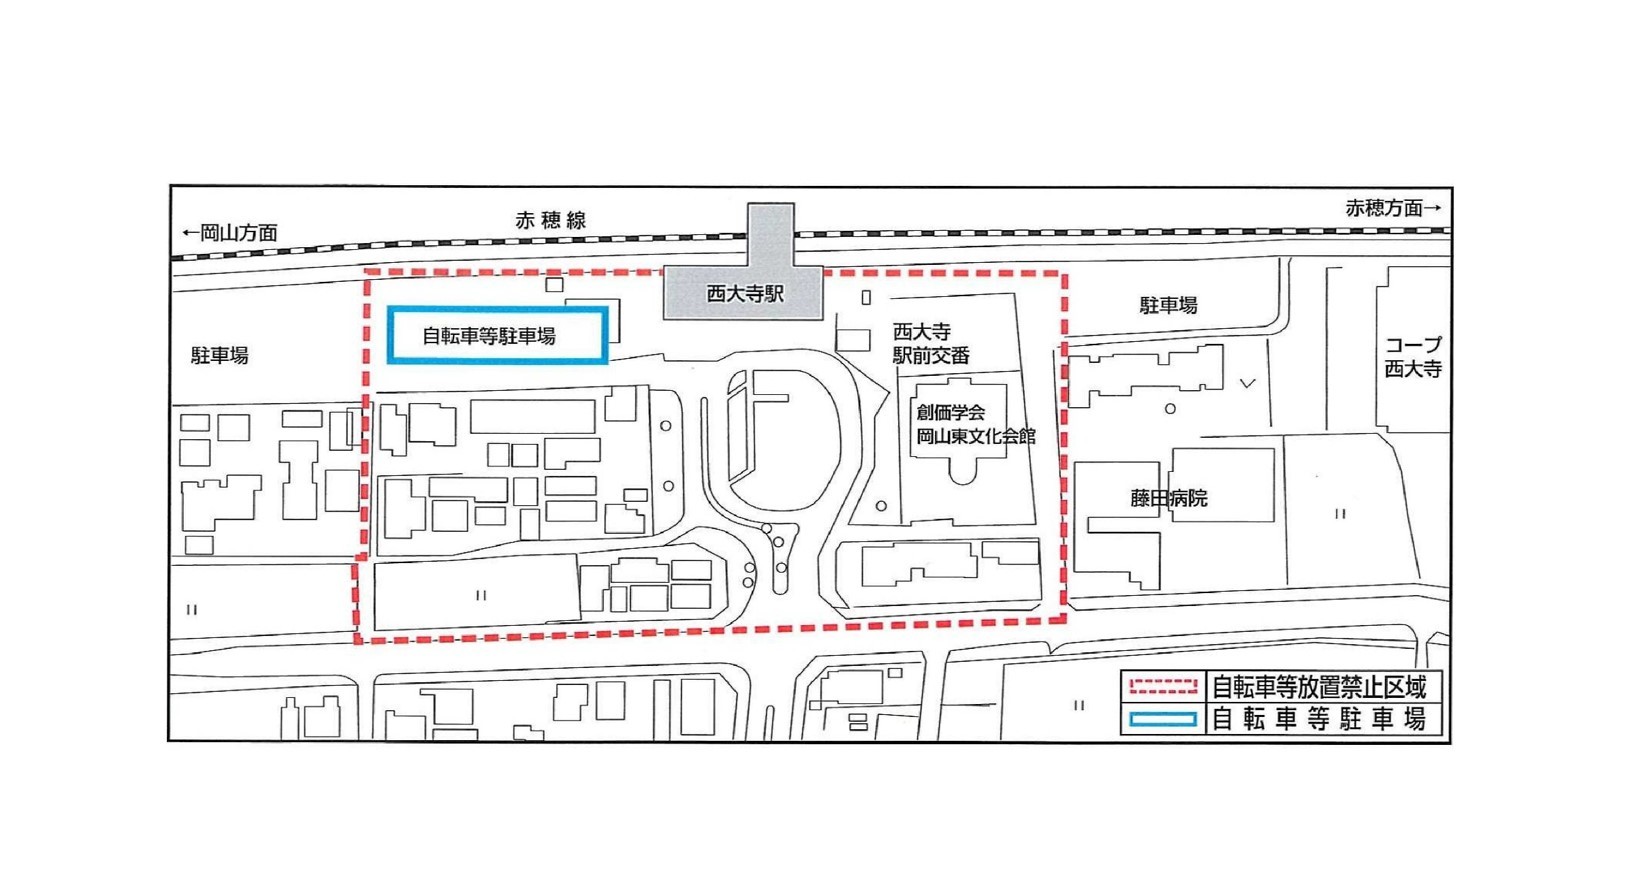 西大寺駅周辺の放置禁止区域並びに自転車等駐車場の位置図